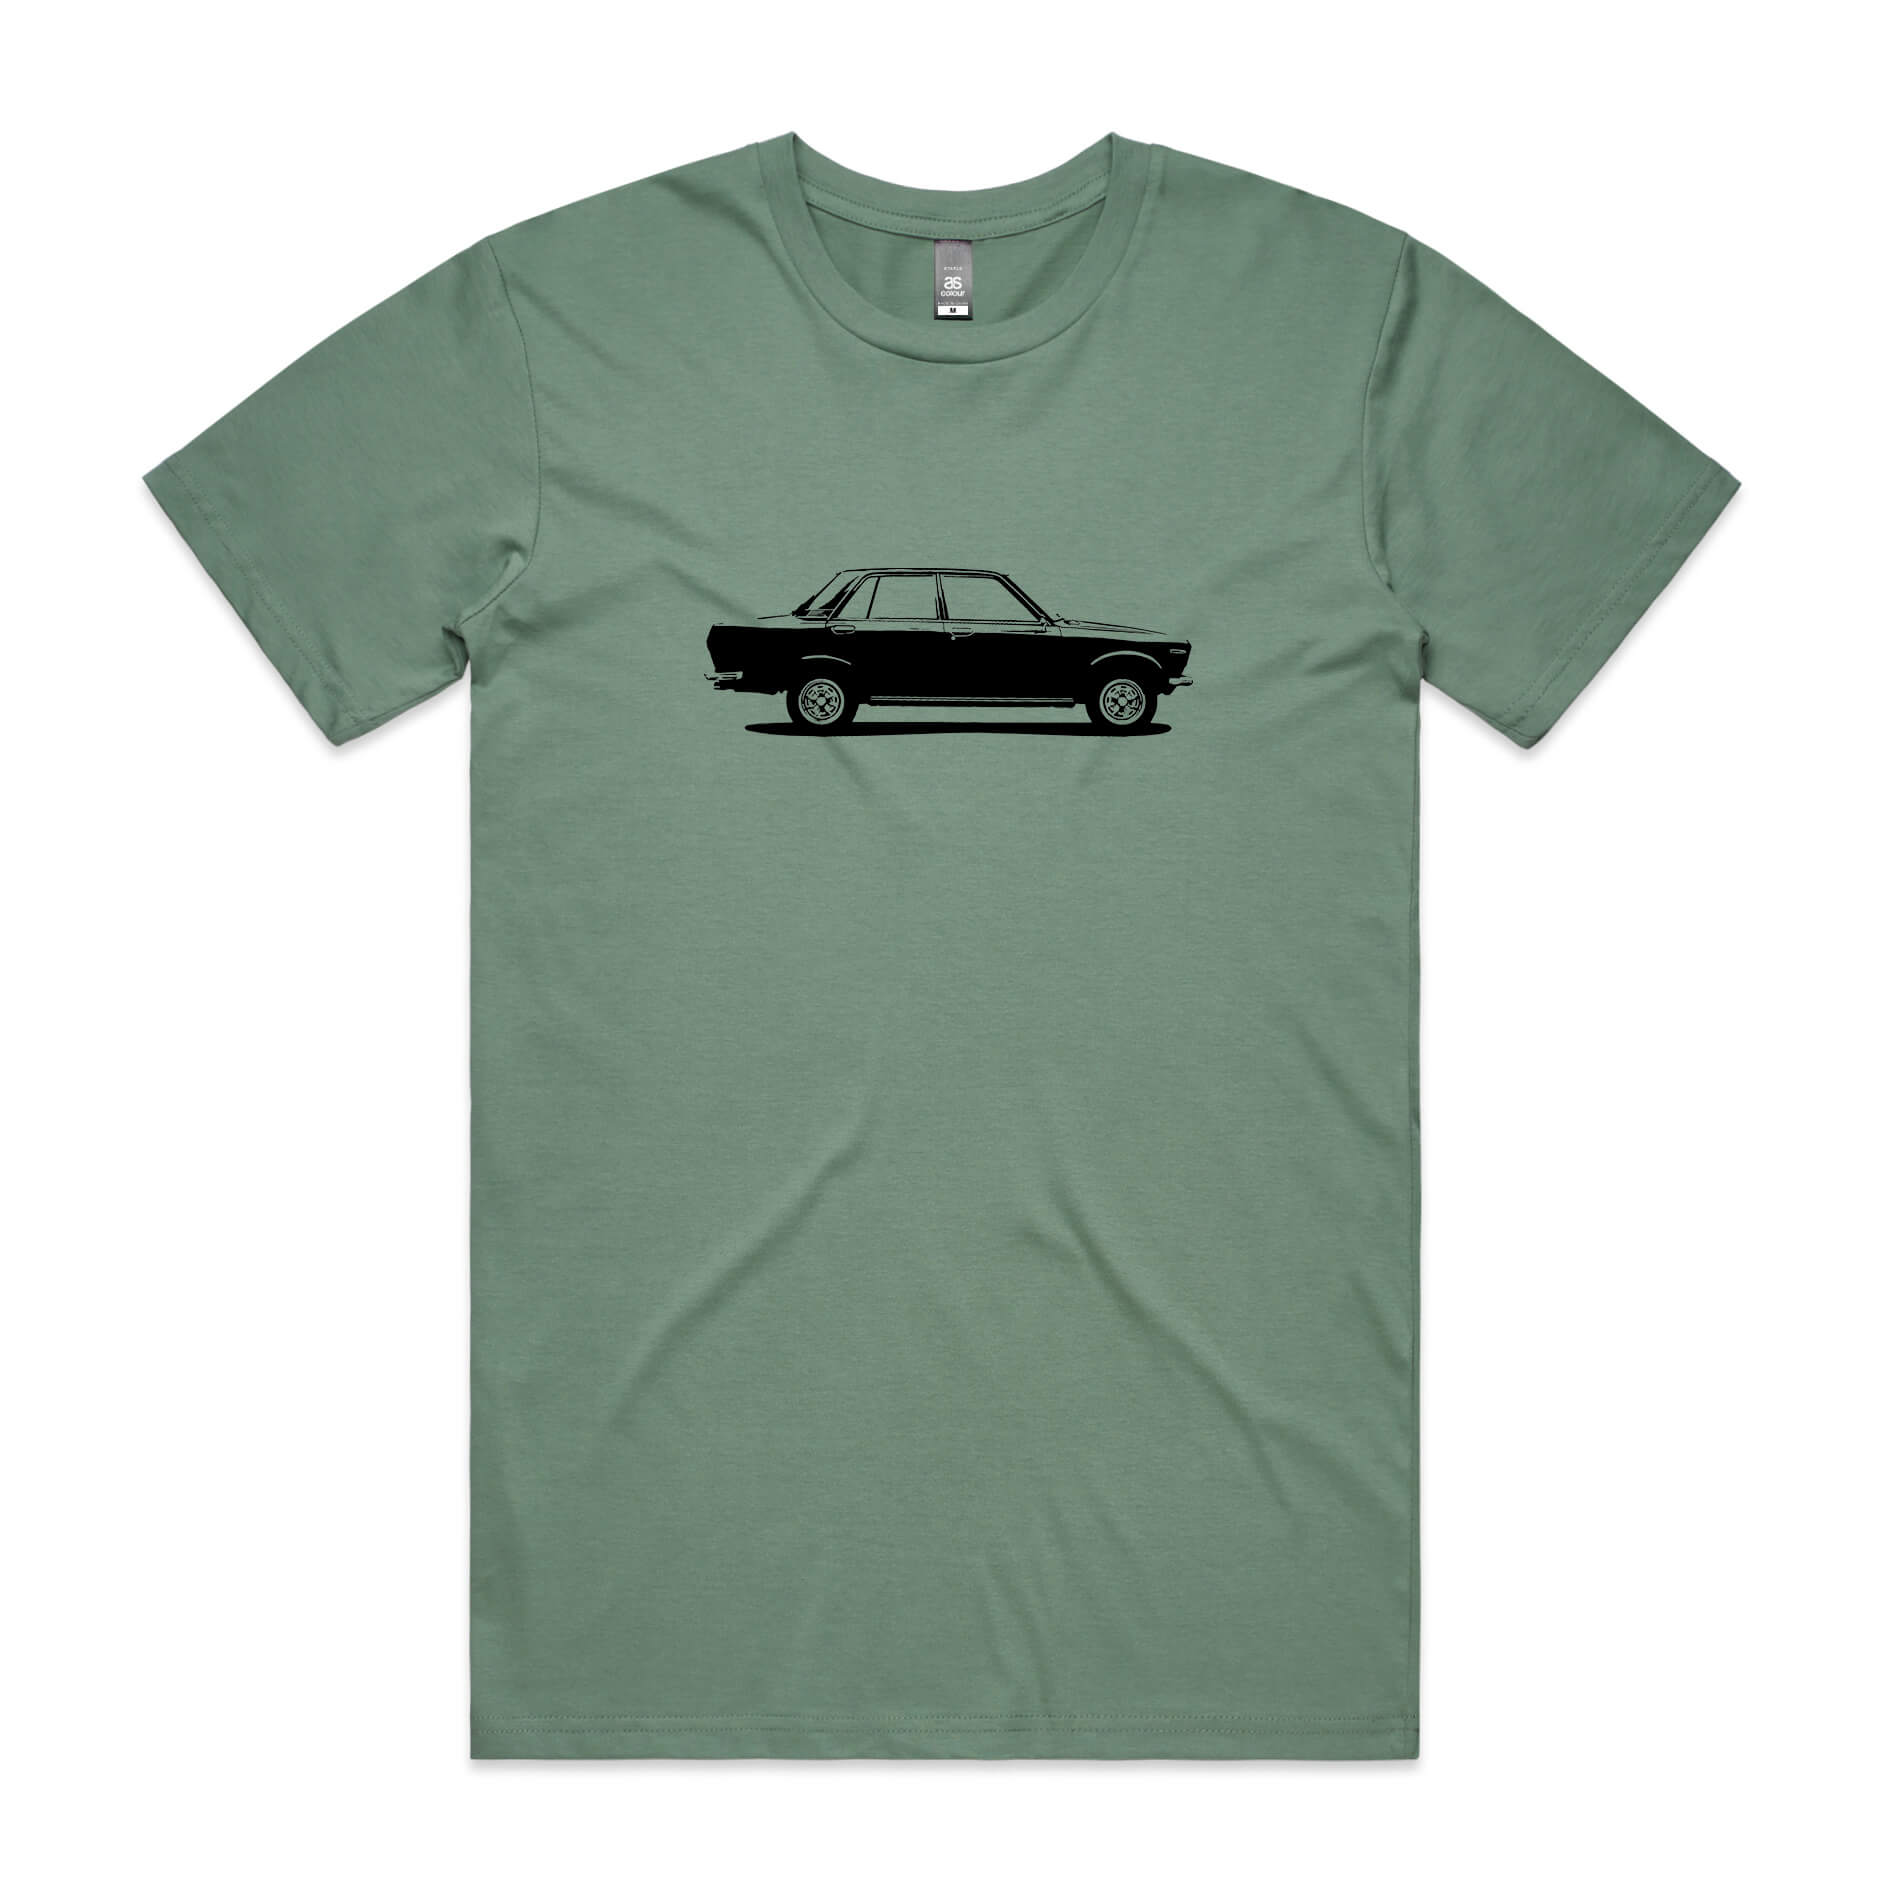 Datsun 1600 t-shirt in sage green